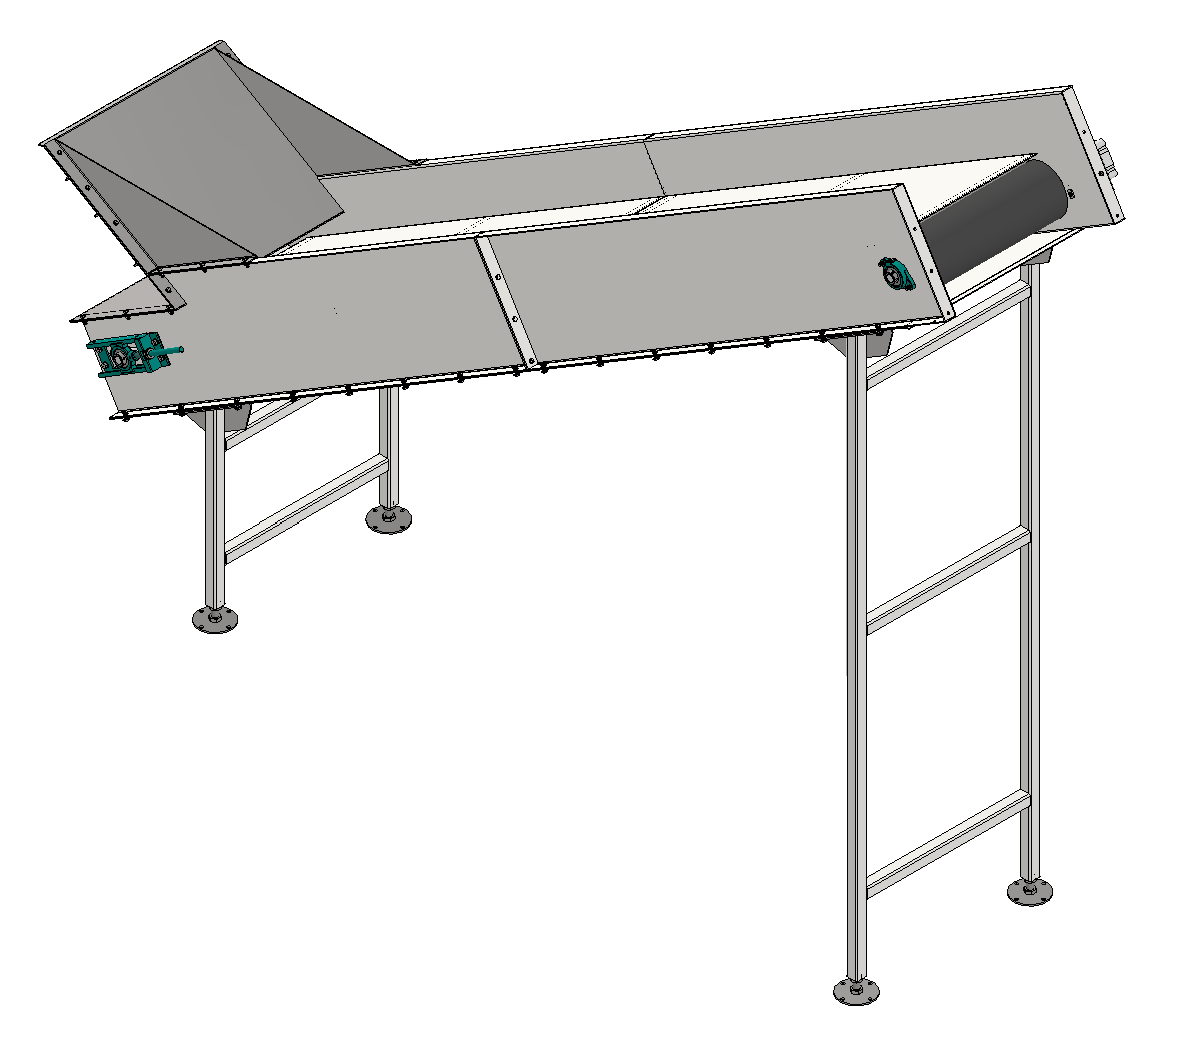 Standard Duty Belt – Custom Conveyor